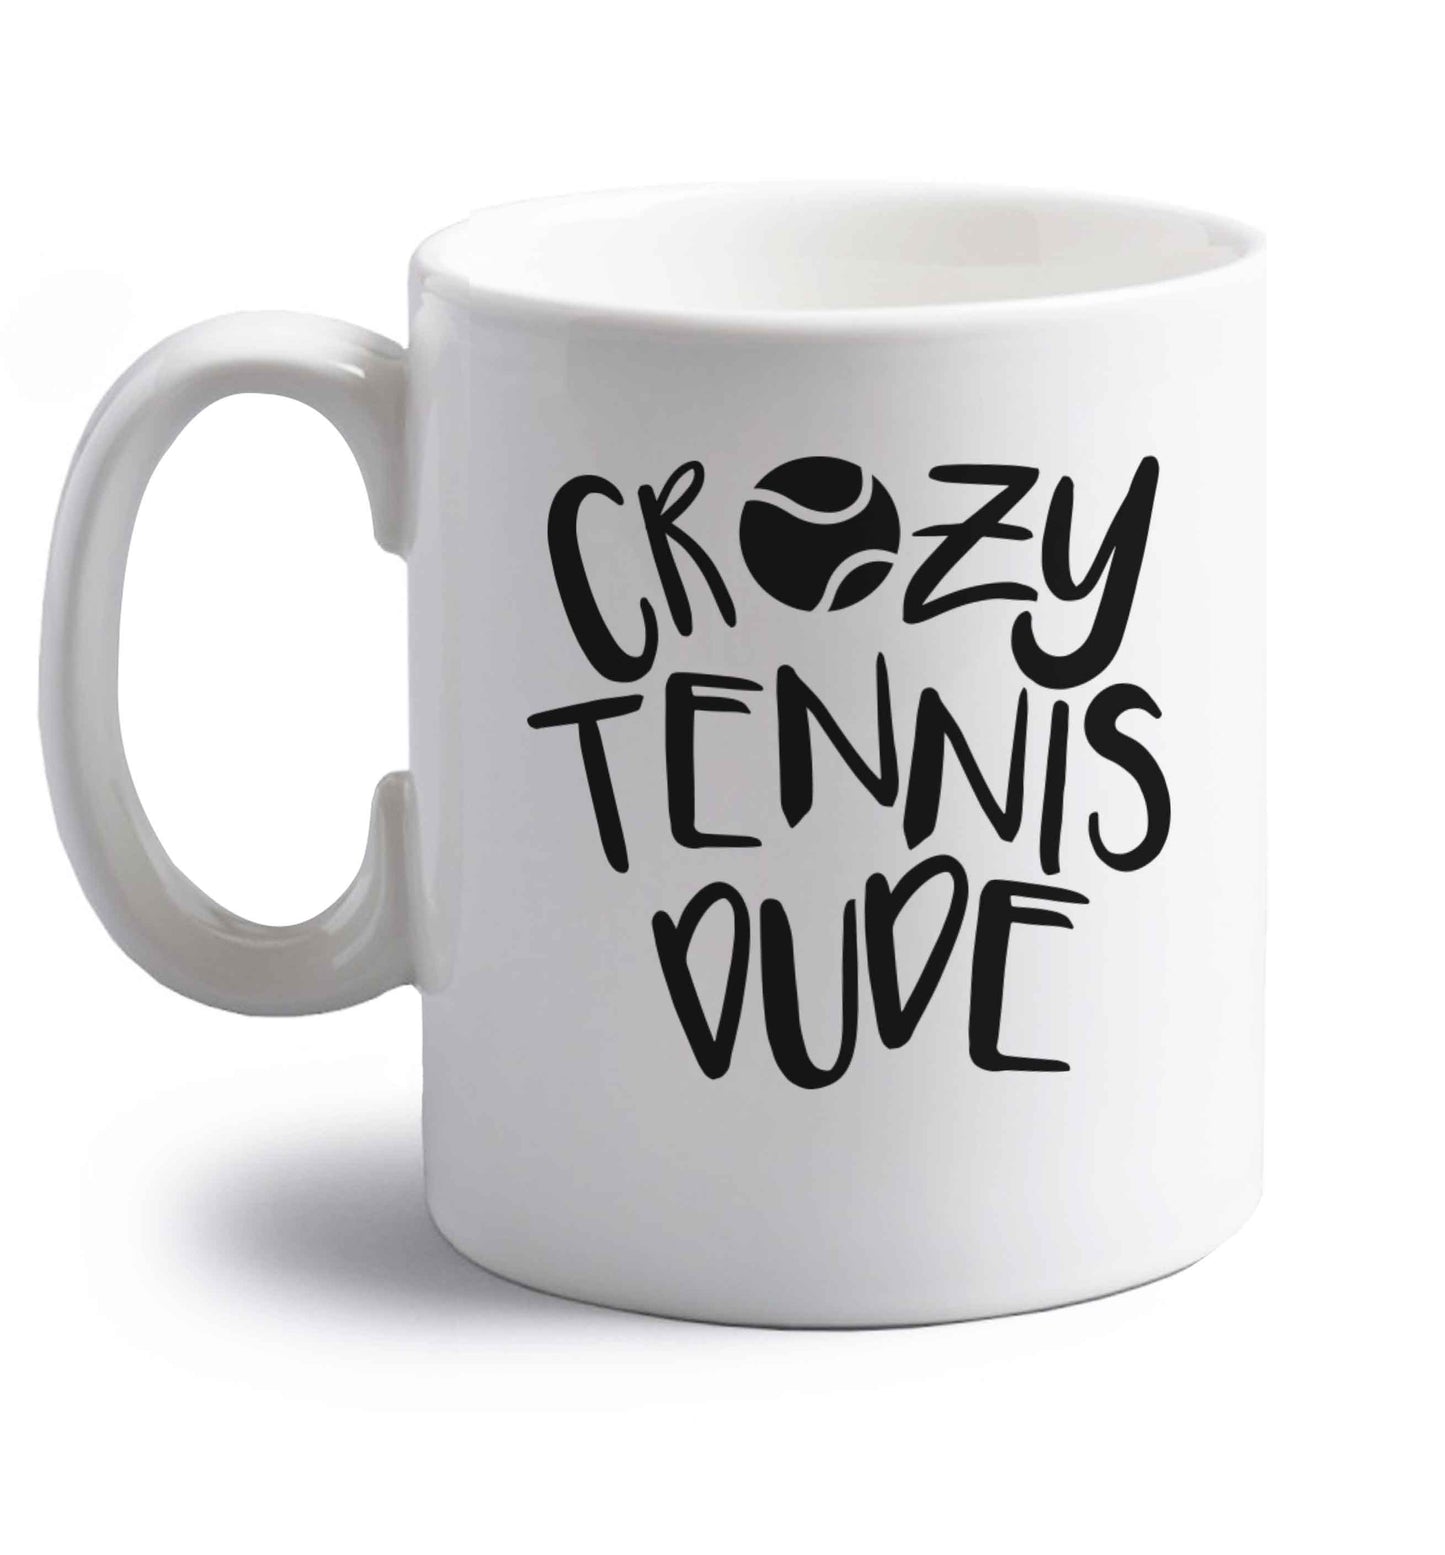 Crazy tennis dude right handed white ceramic mug 